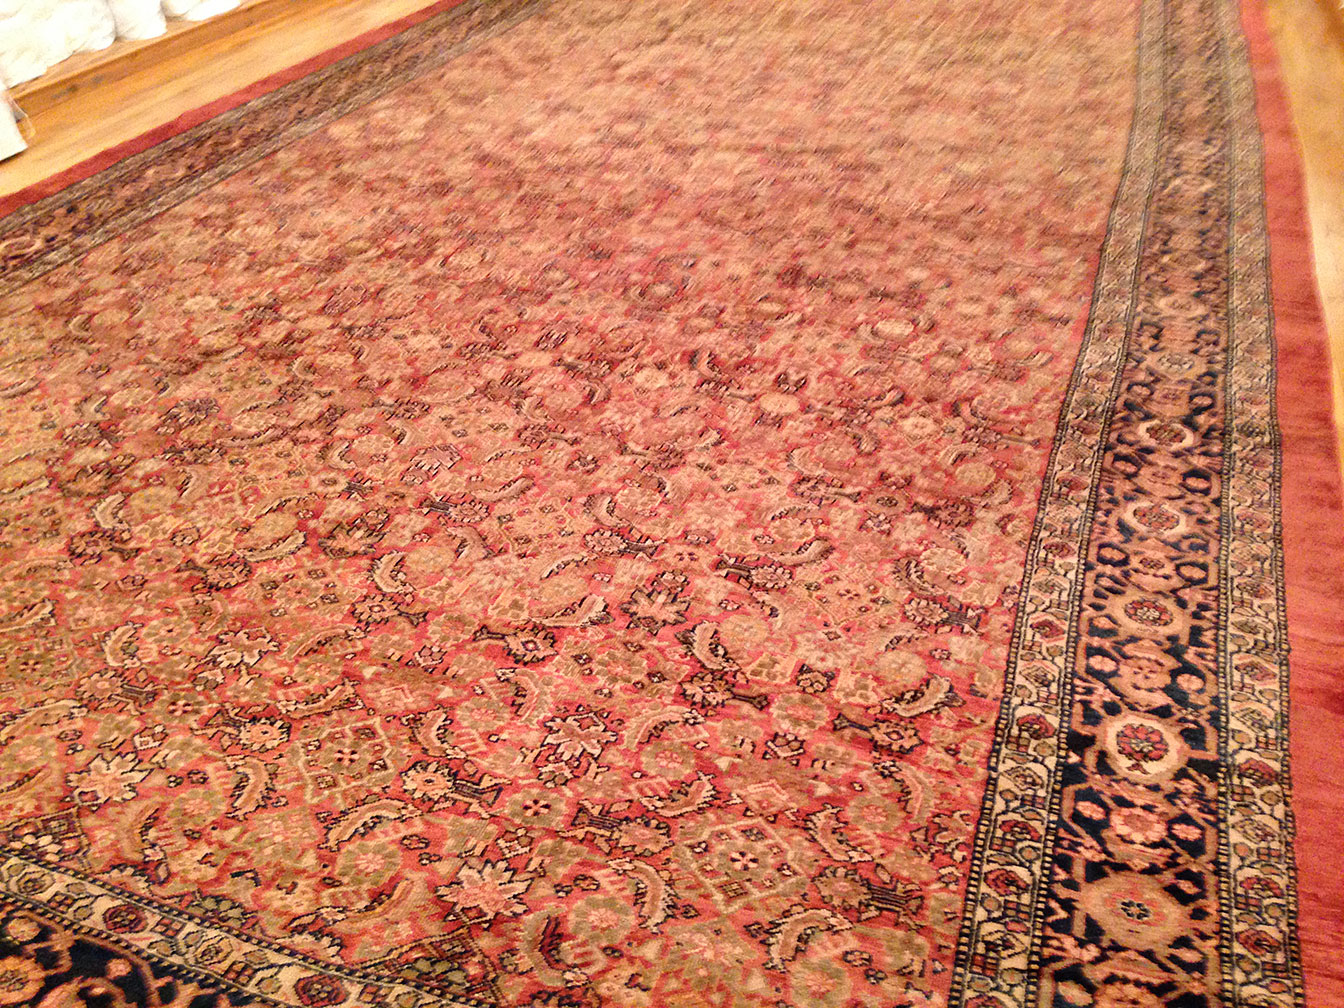 Antique sultan abad Carpet - # 9571